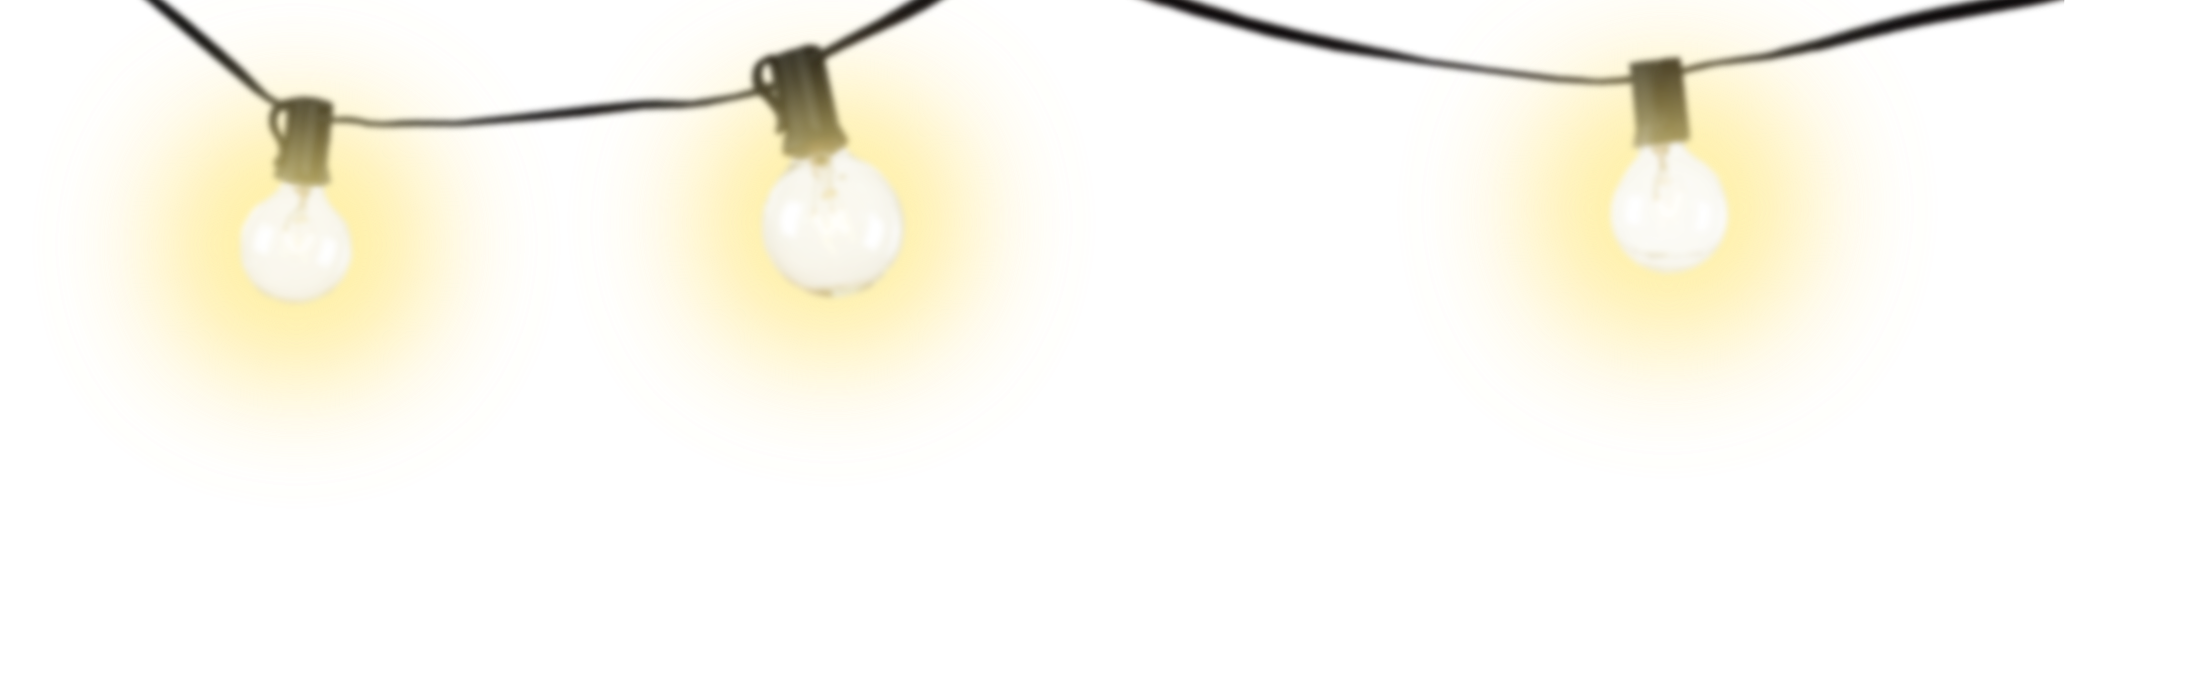 Декоративная лампочка PNG высококачественный образ